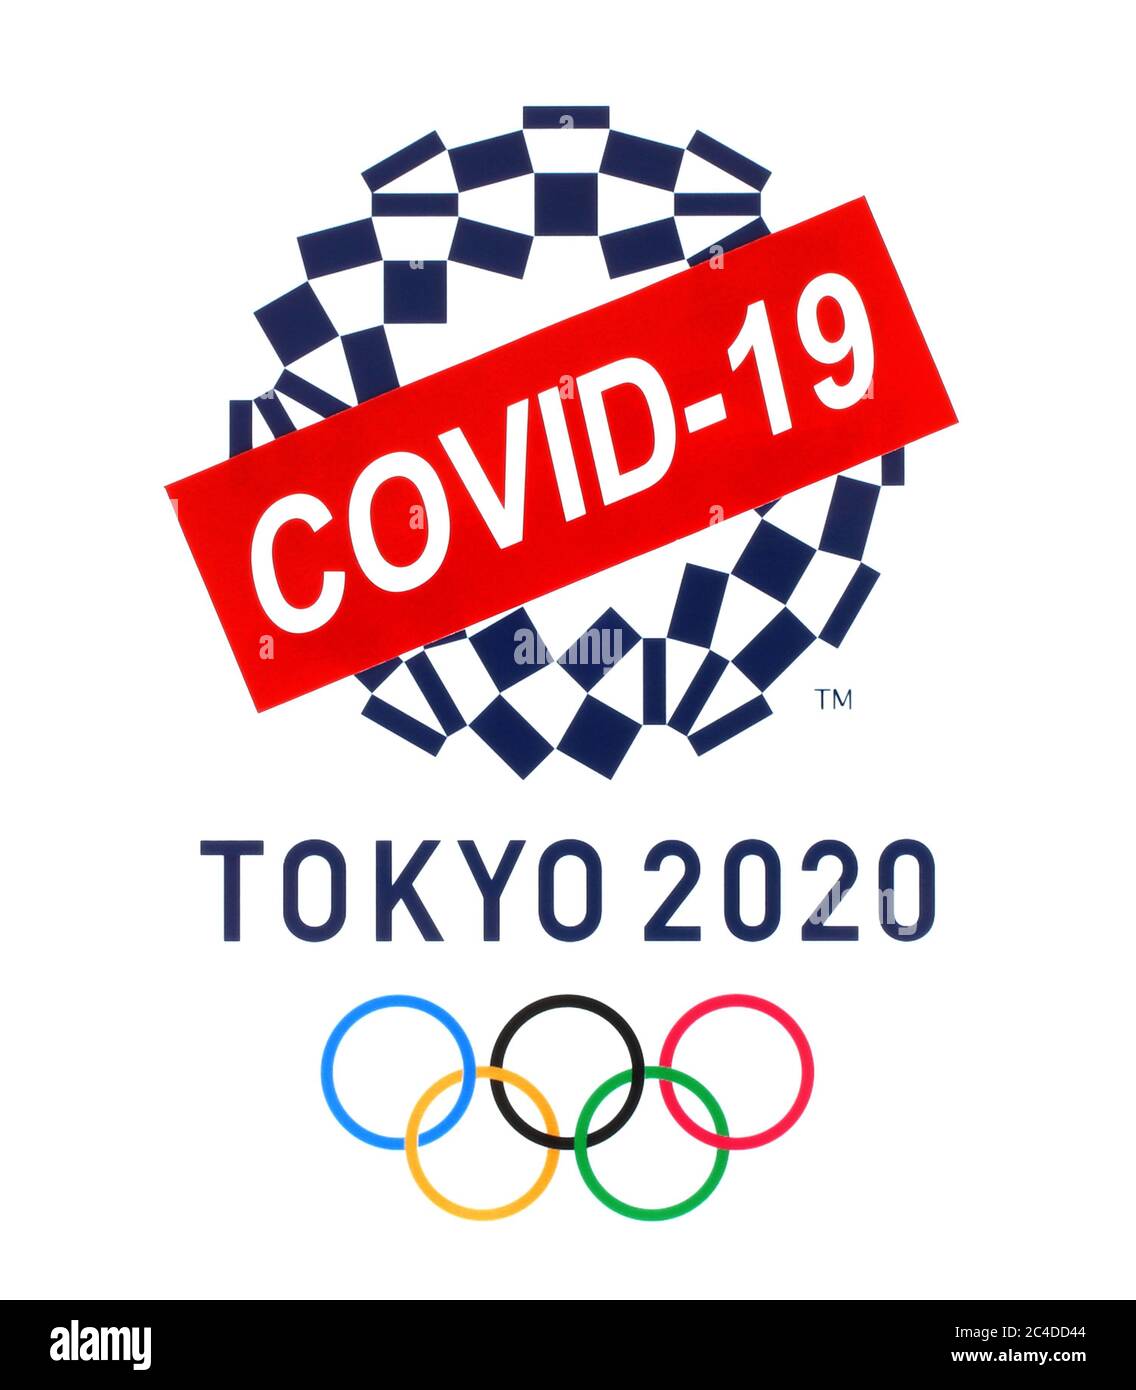 Kiev, Ucraina - Marzo 20,2020: Summer Olympic Games 2020 logo Tokio, Giappone, stampato su carta, barrato da carta segno COVID-19. Le Olimpiadi erano postpo Foto Stock